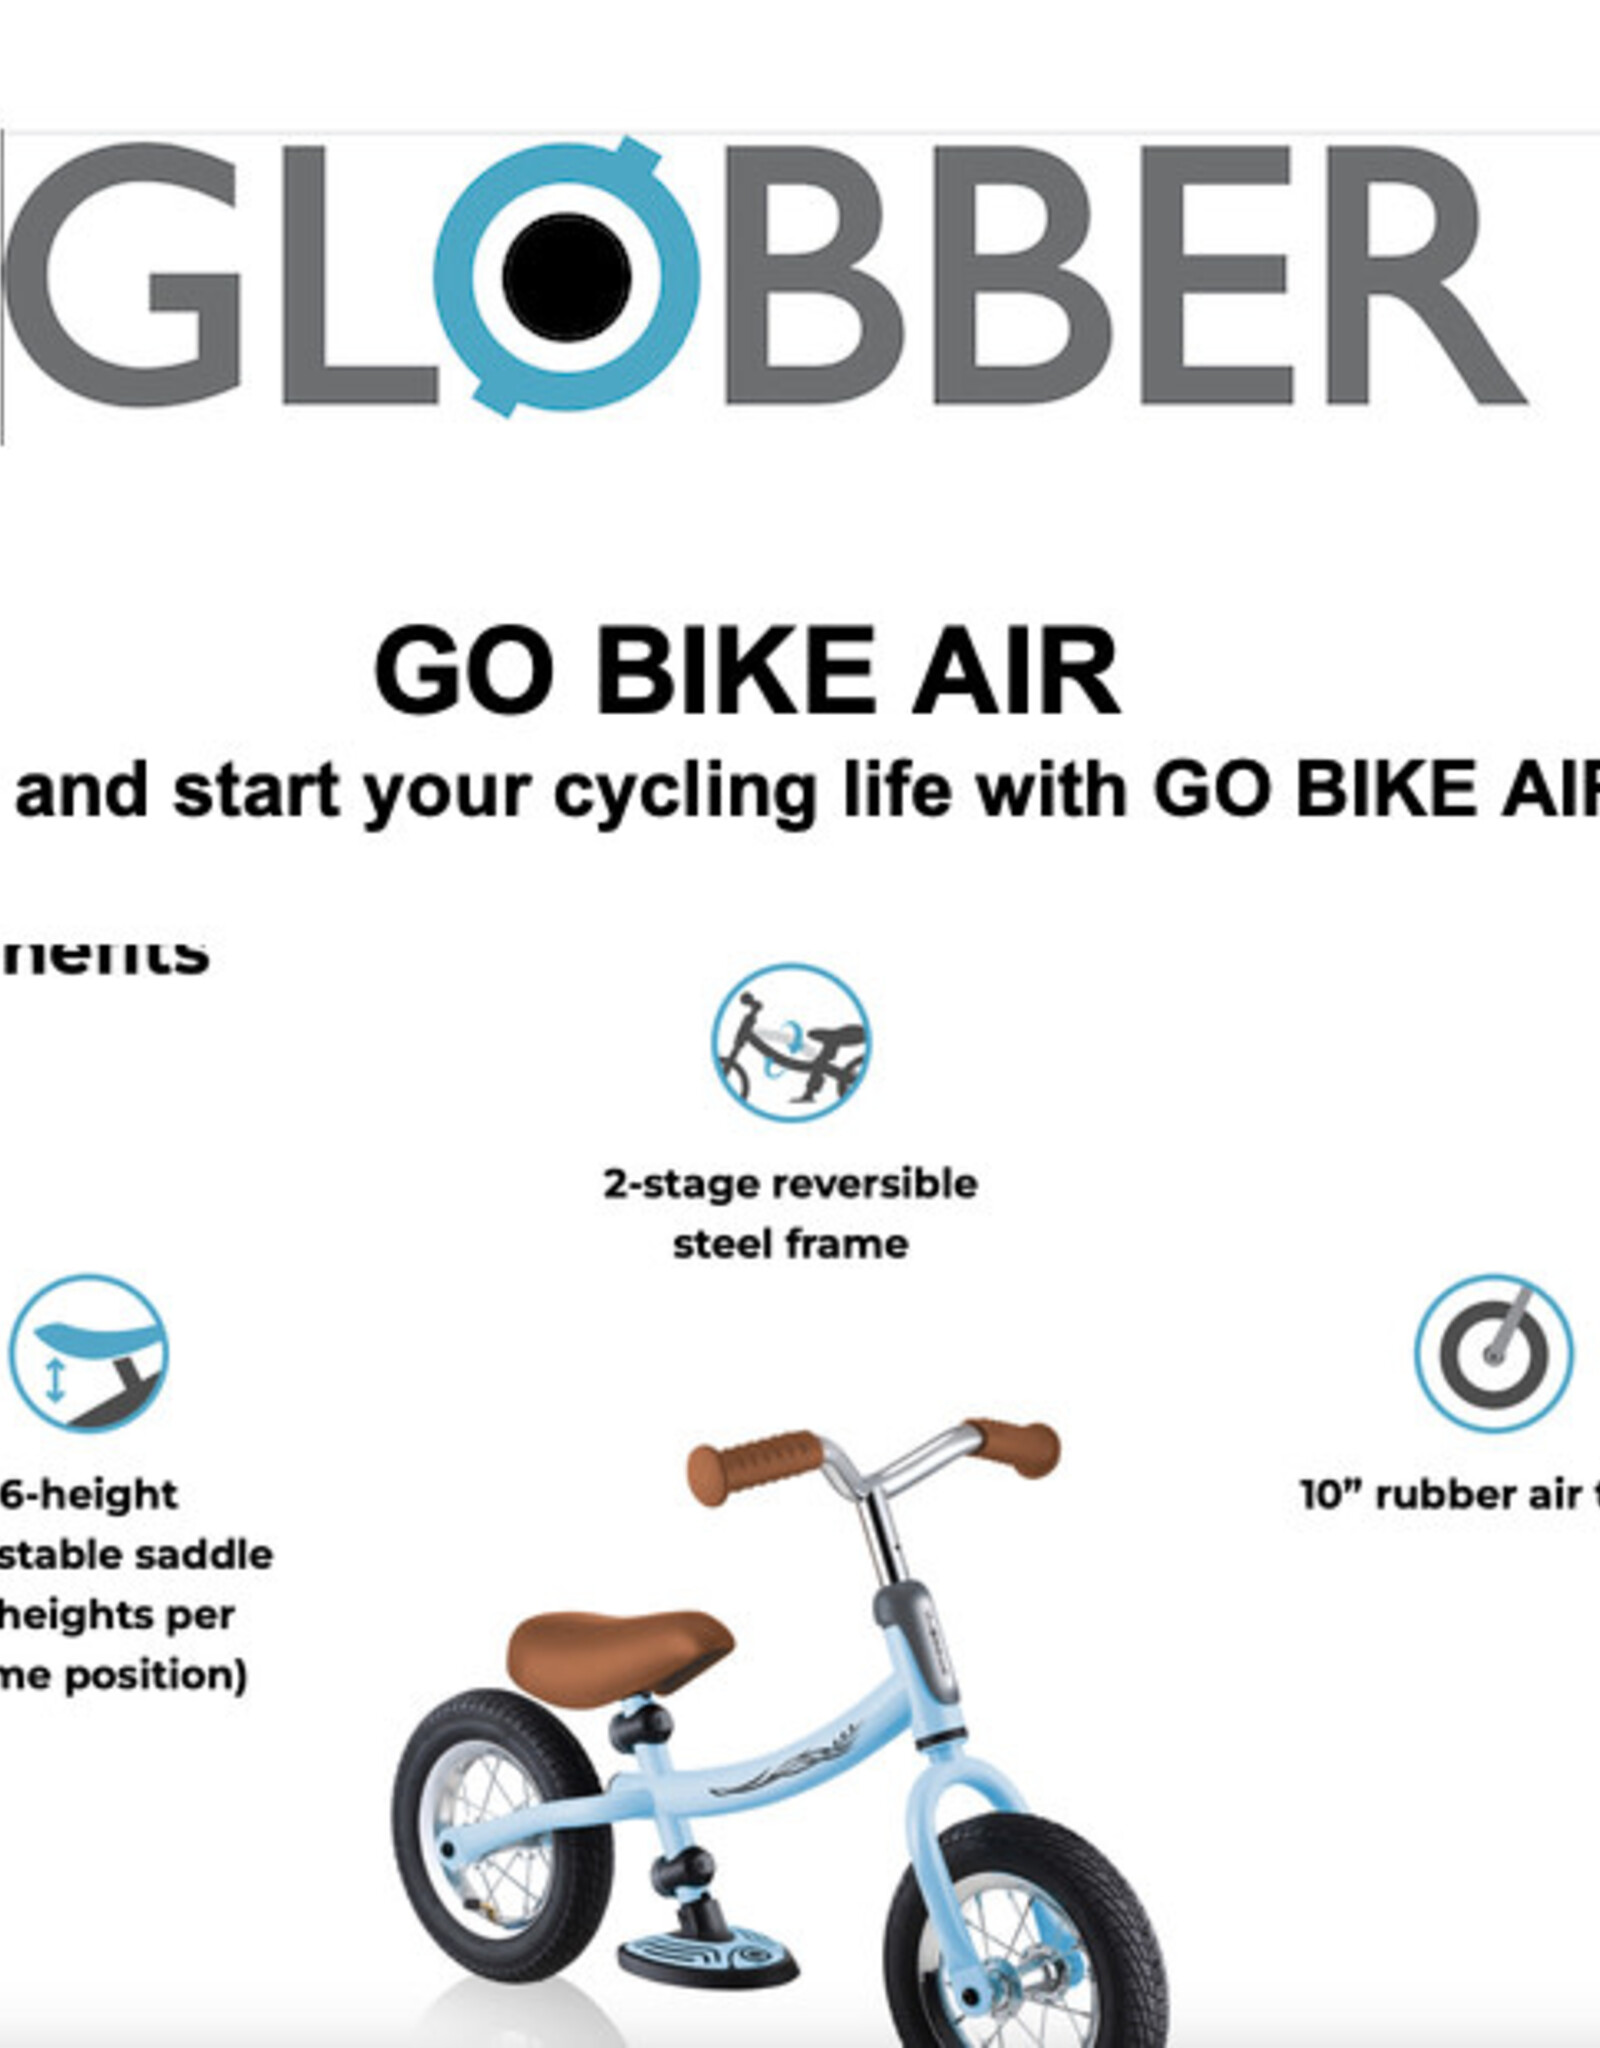 Globber Go Bike Air